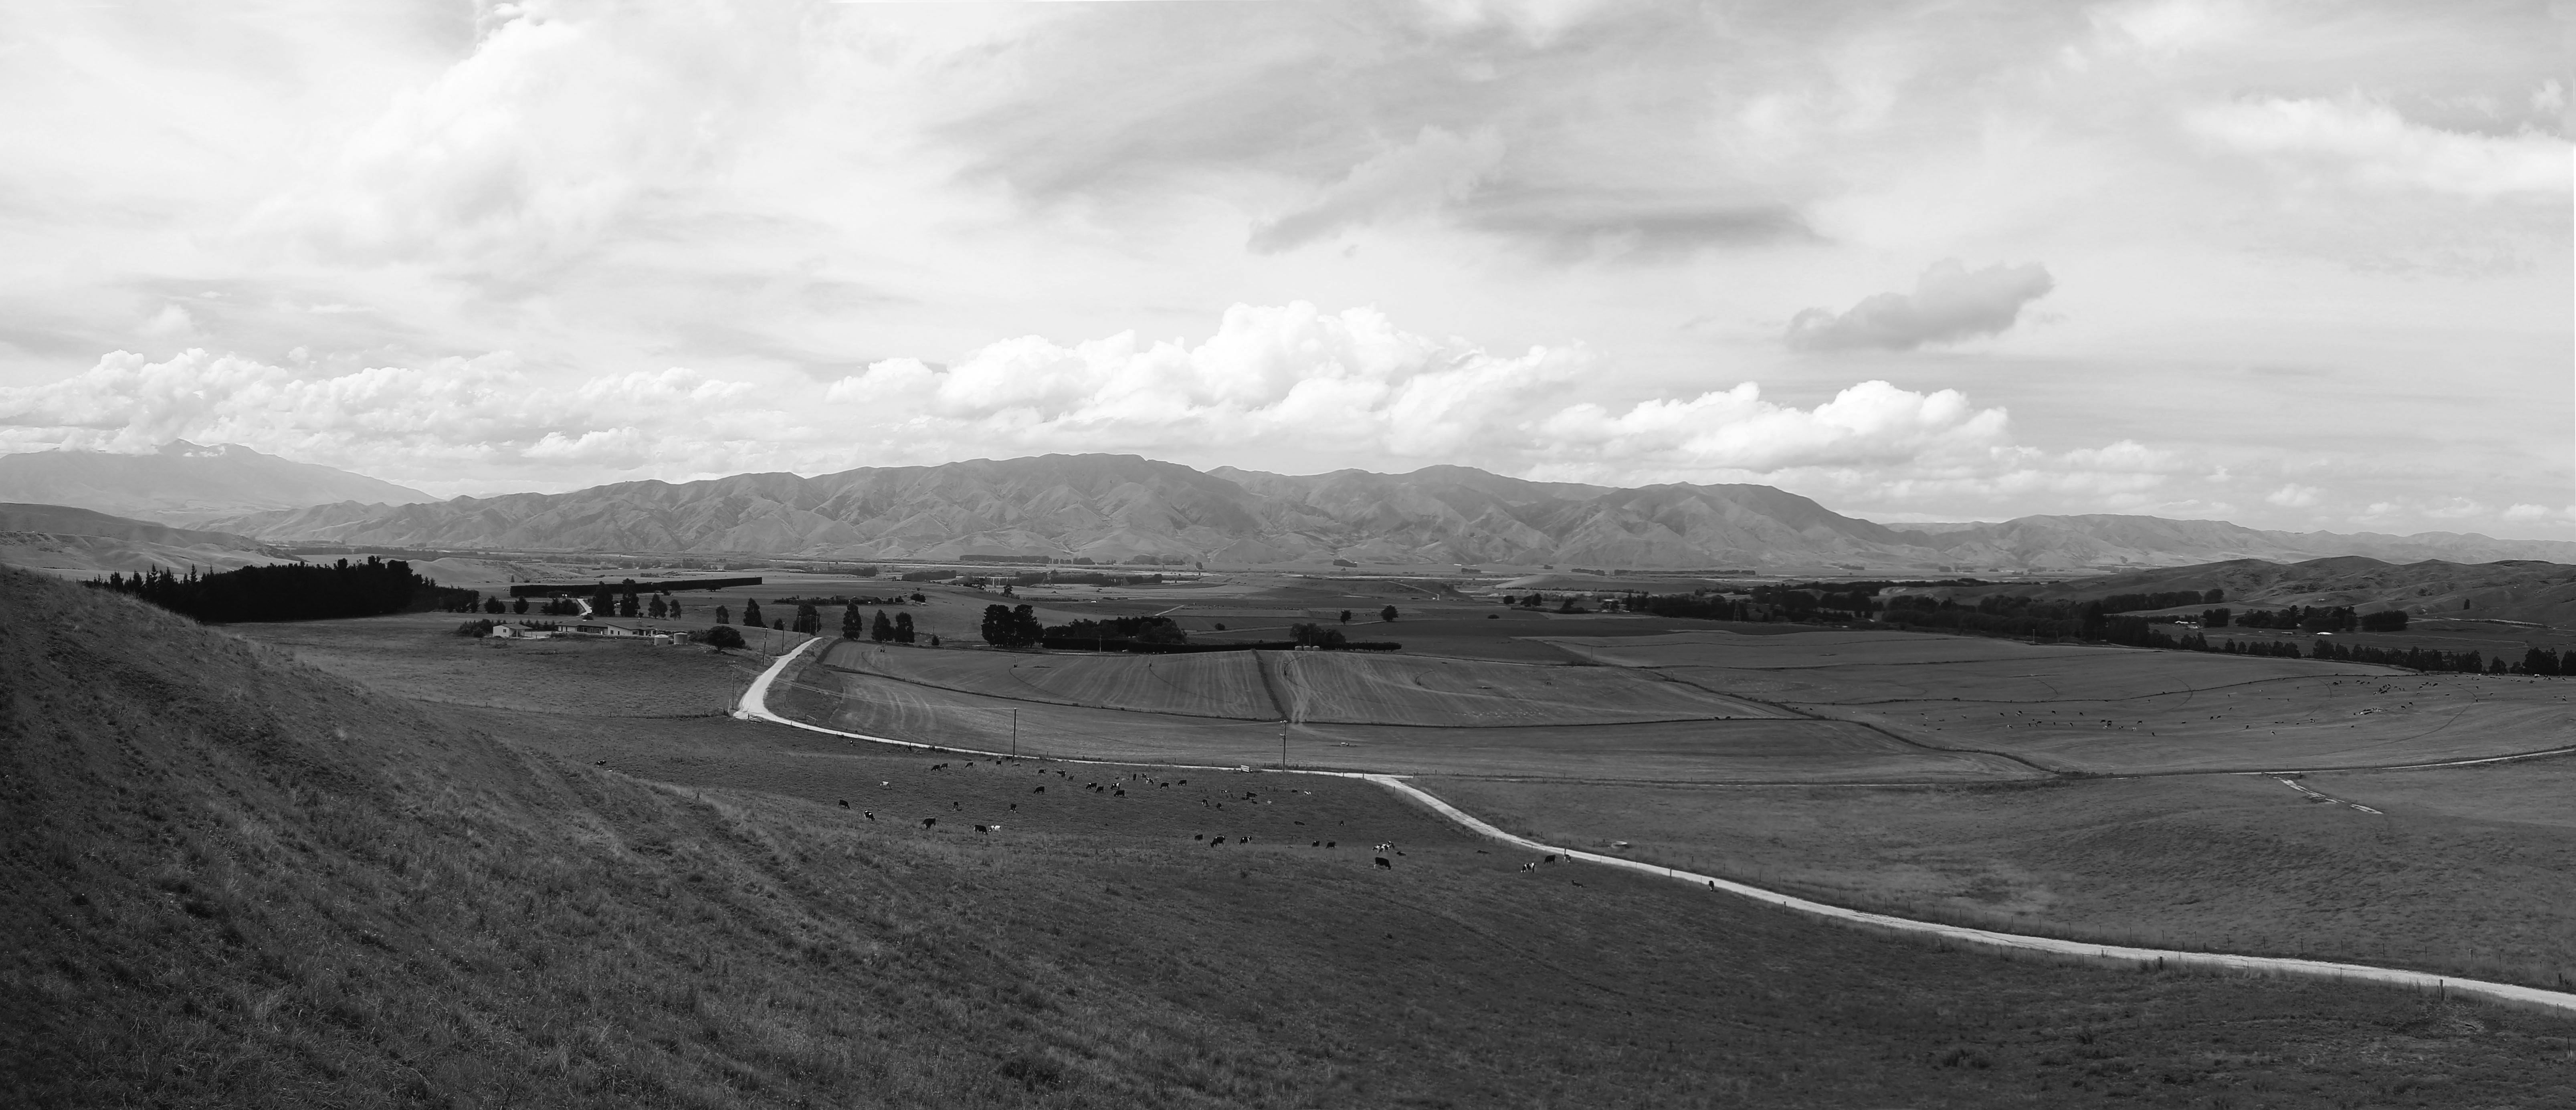 Waitaki Valley panorama depicting rural setting